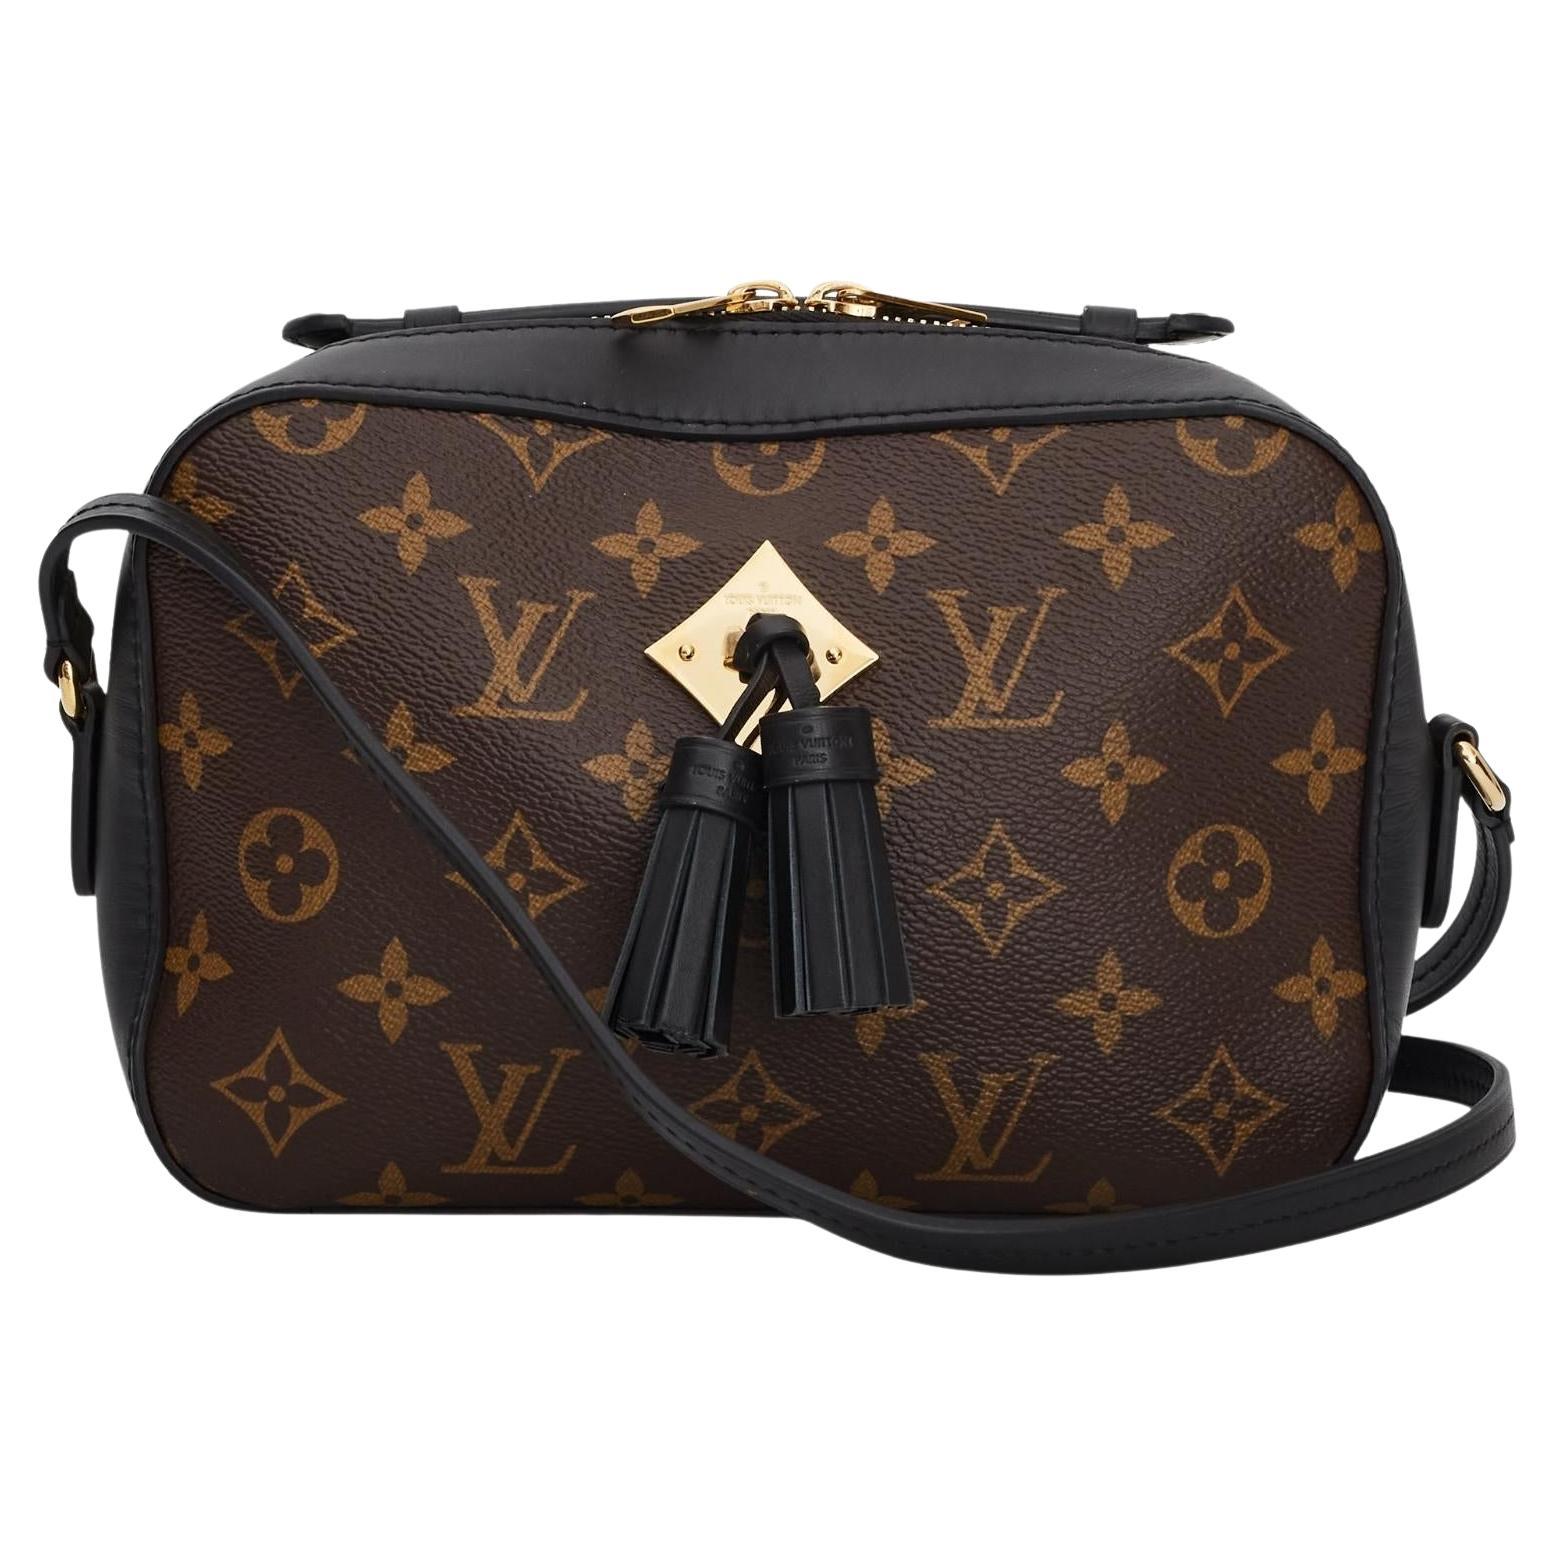 Louis Vuitton Saintonge Bag Review